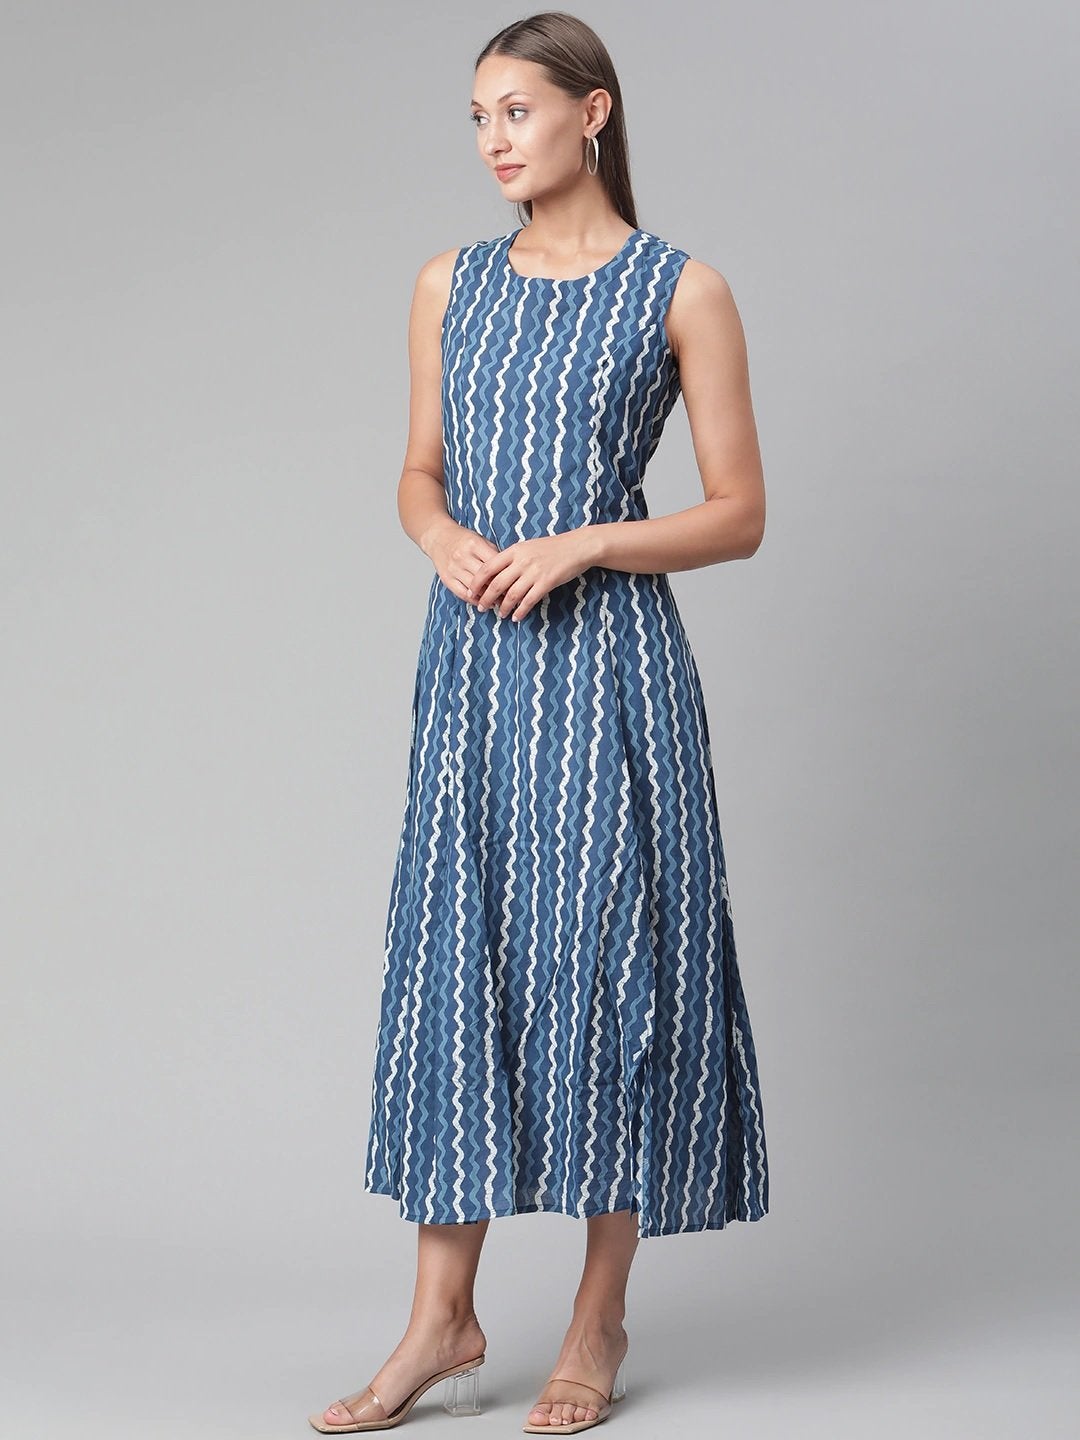 Women's Blue Cotton Long Dress - Divena